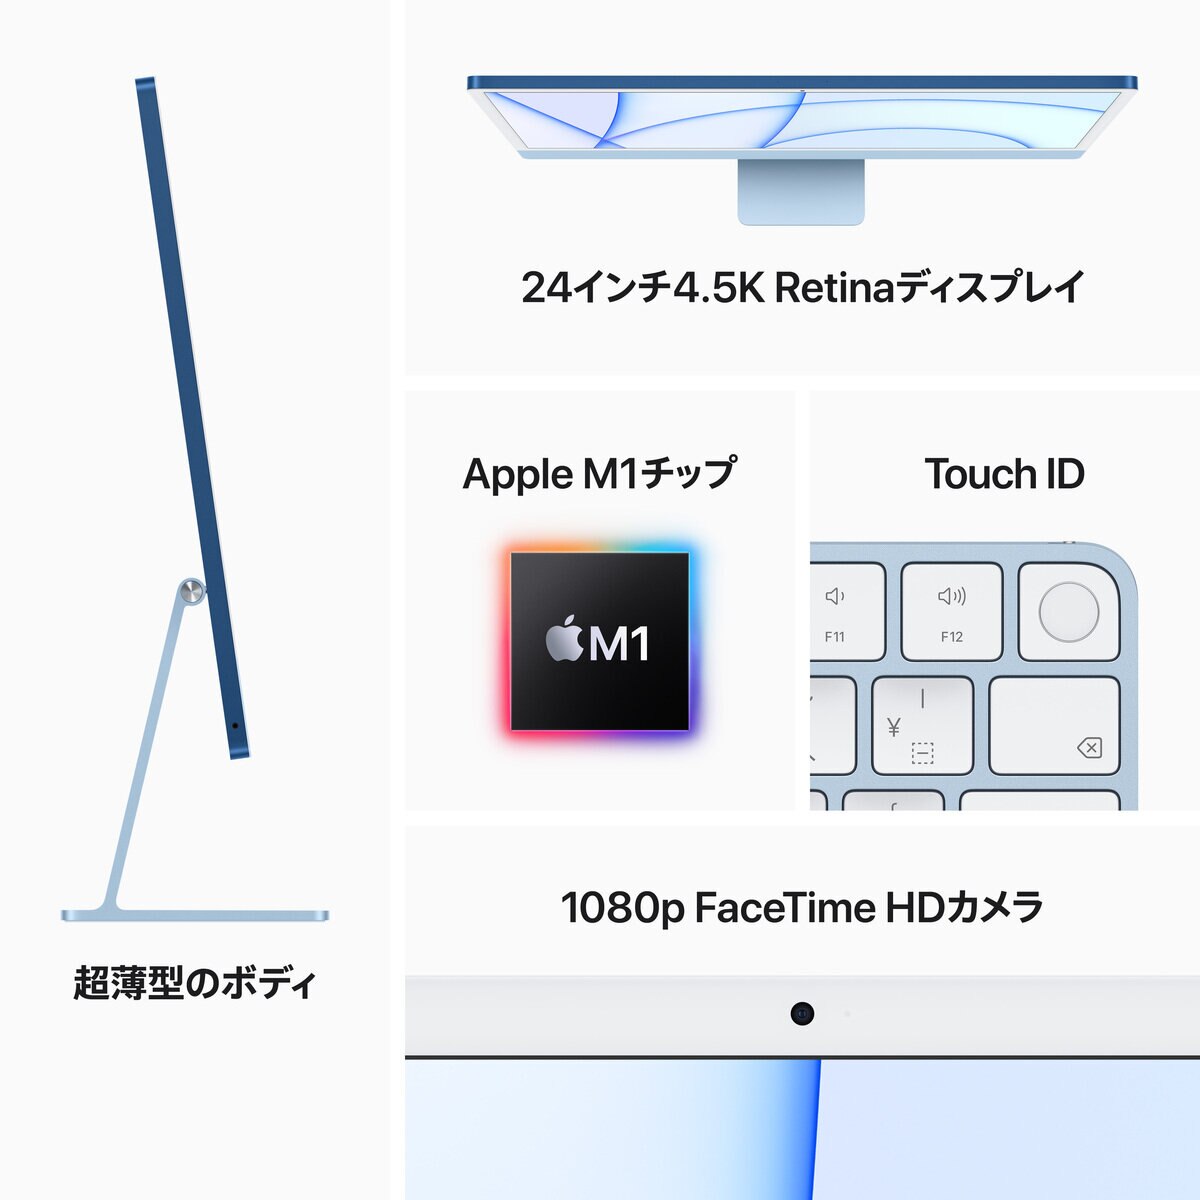 iMac 24インチ Retina 4.5Kディスプレイ/8コアCPU&8コアGPU/M1チップ